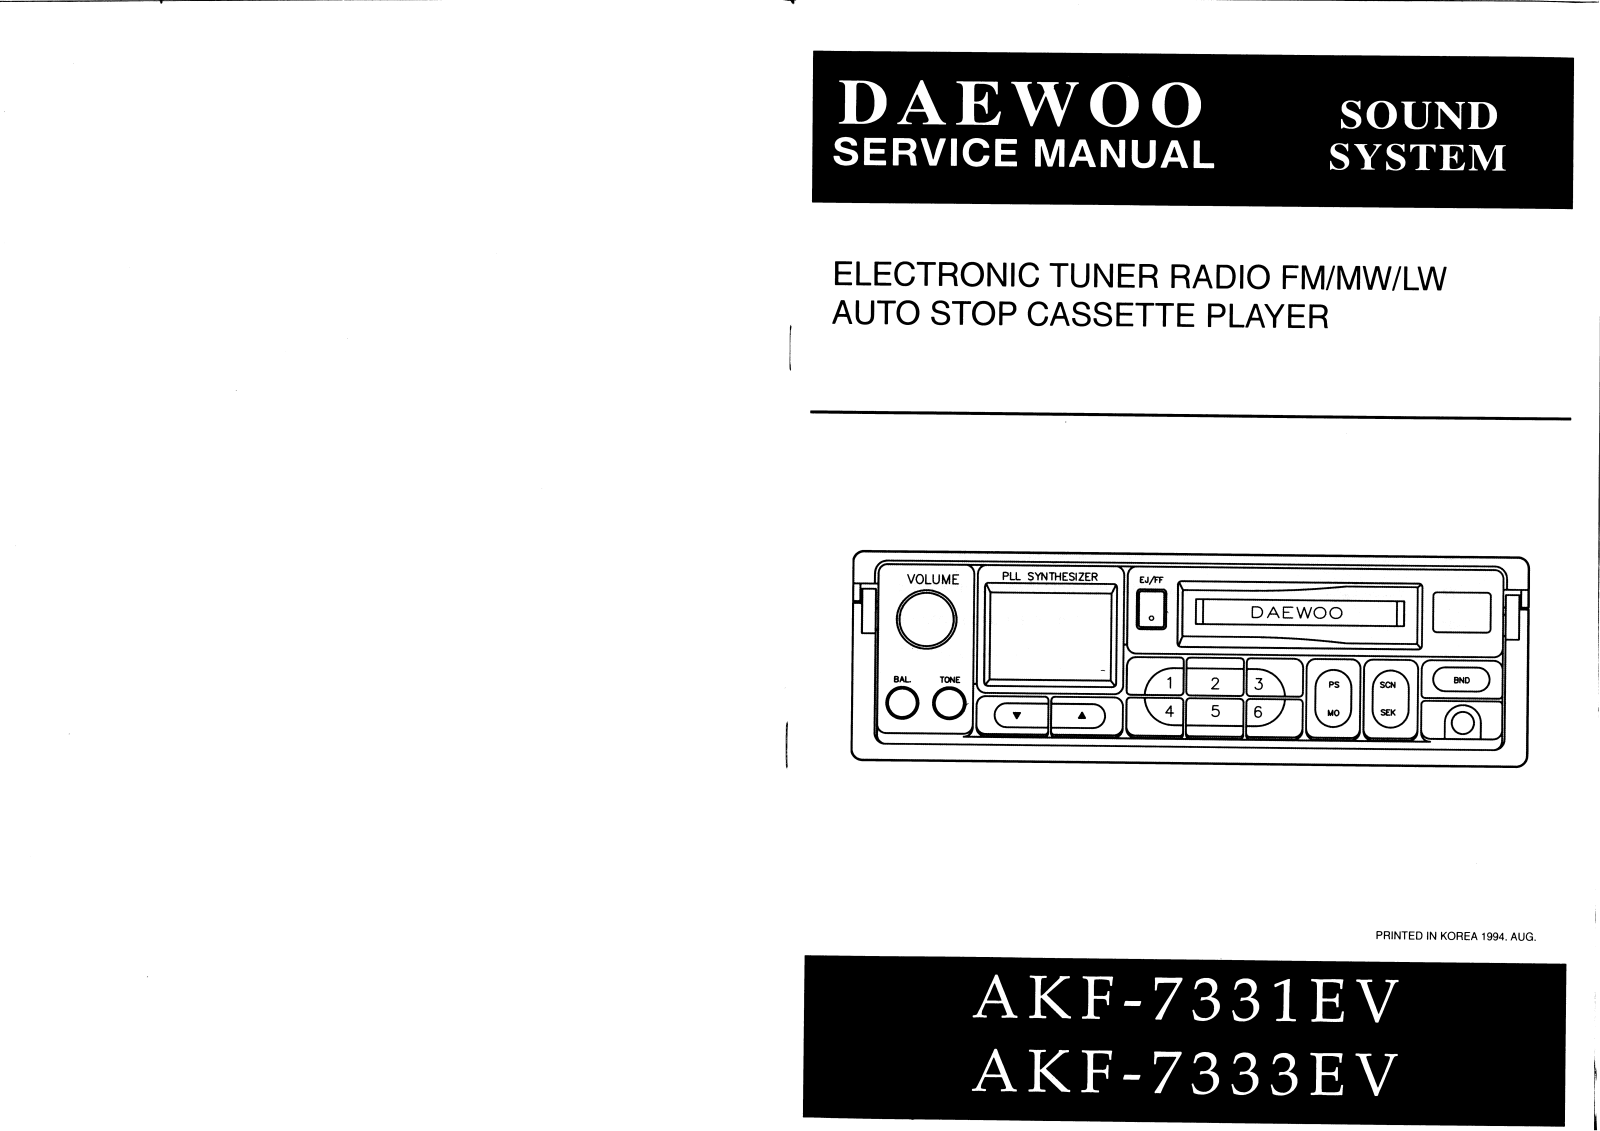 Daewoo AKF-7331 EV Service Manual